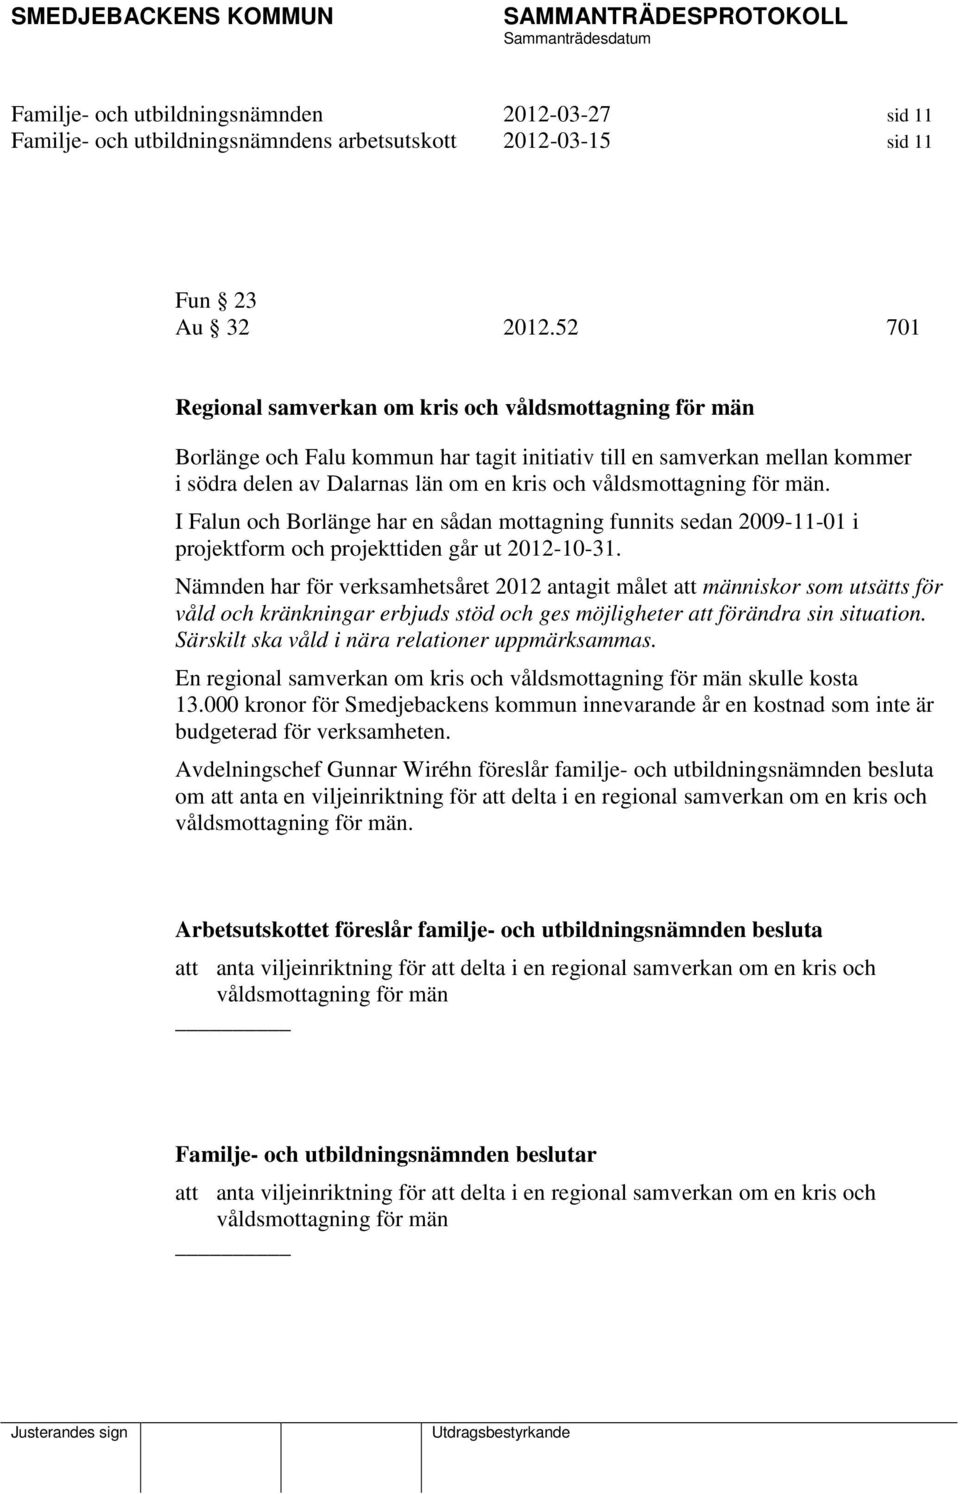 för män. I Falun och Borlänge har en sådan mottagning funnits sedan 2009-11-01 i projektform och projekttiden går ut 2012-10-31.